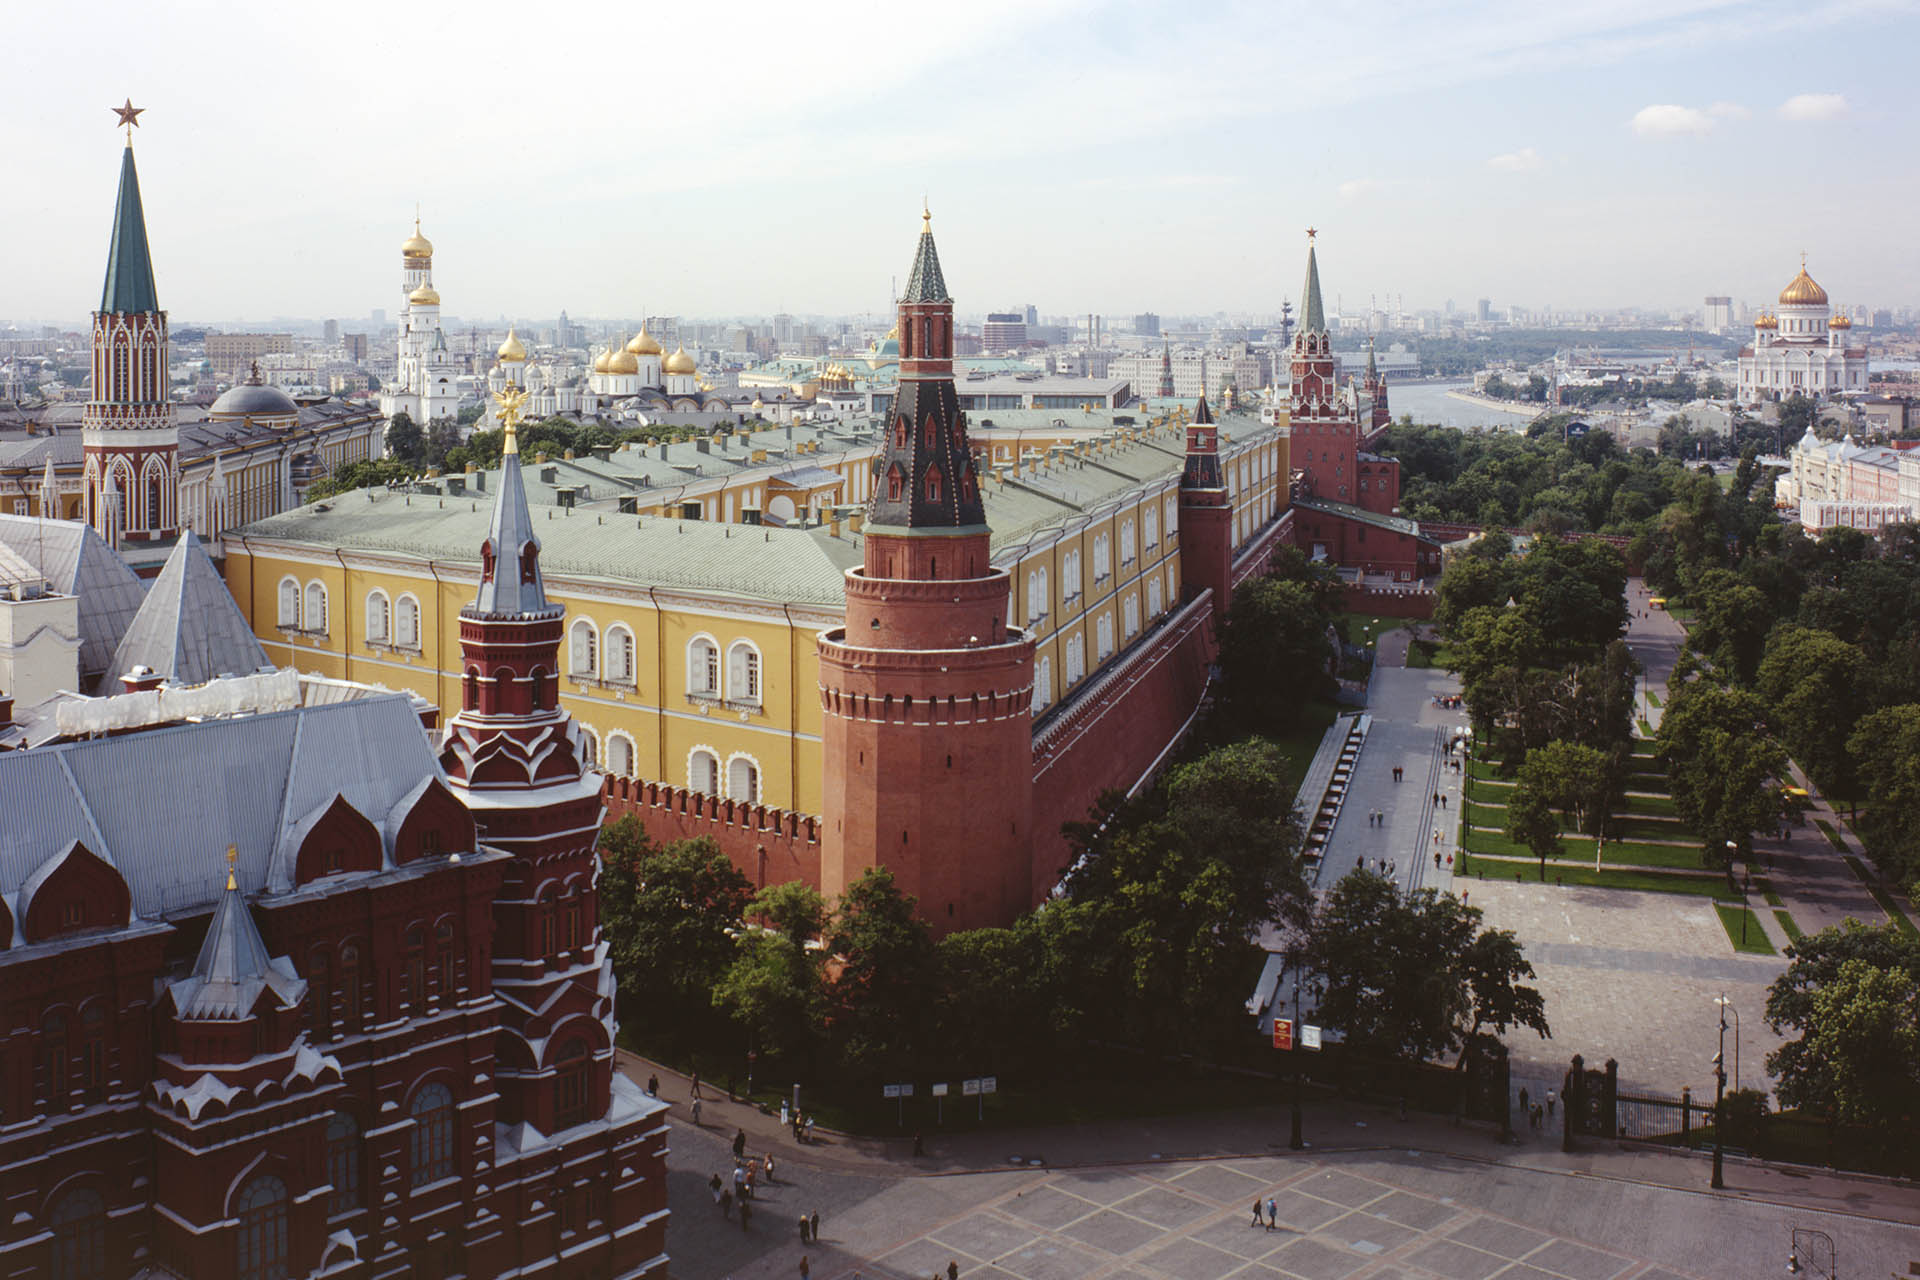 Тоннель под Красной площадью или восьмая сталинская высотка. Как хорошо вы знаете градостроительную историю Москвы? Тест